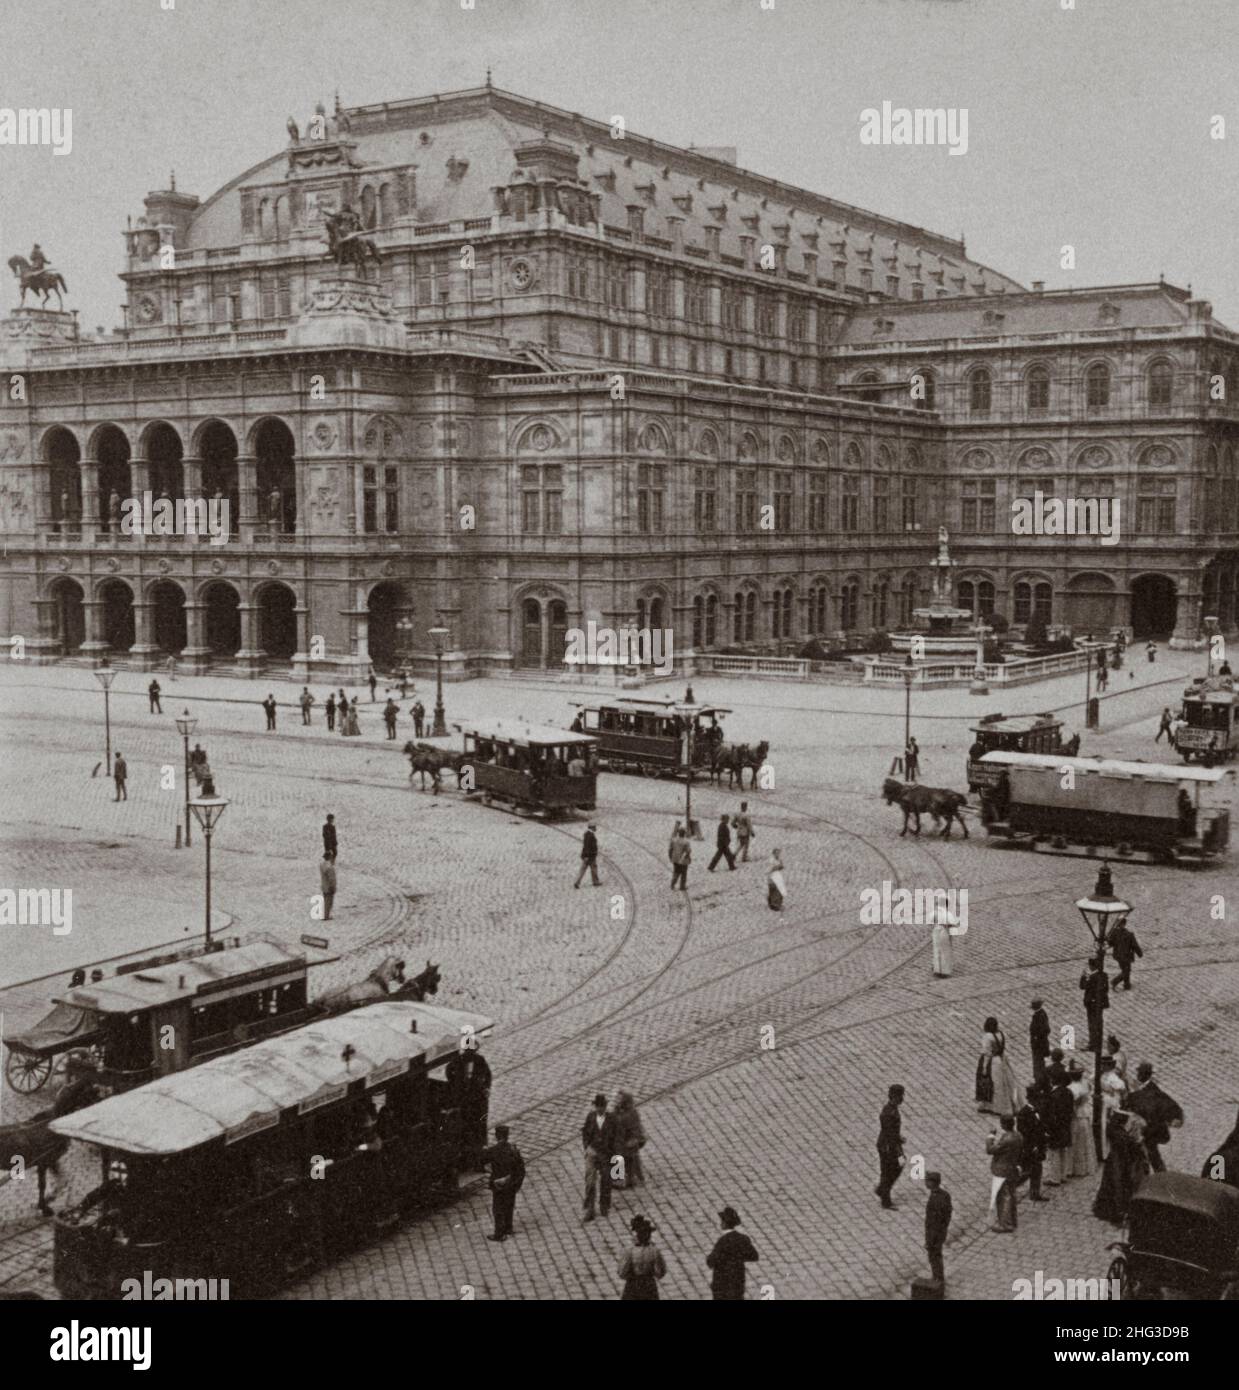 Photo d'époque de l'Opéra impérial, Vienne, Autriche.1900s Banque D'Images